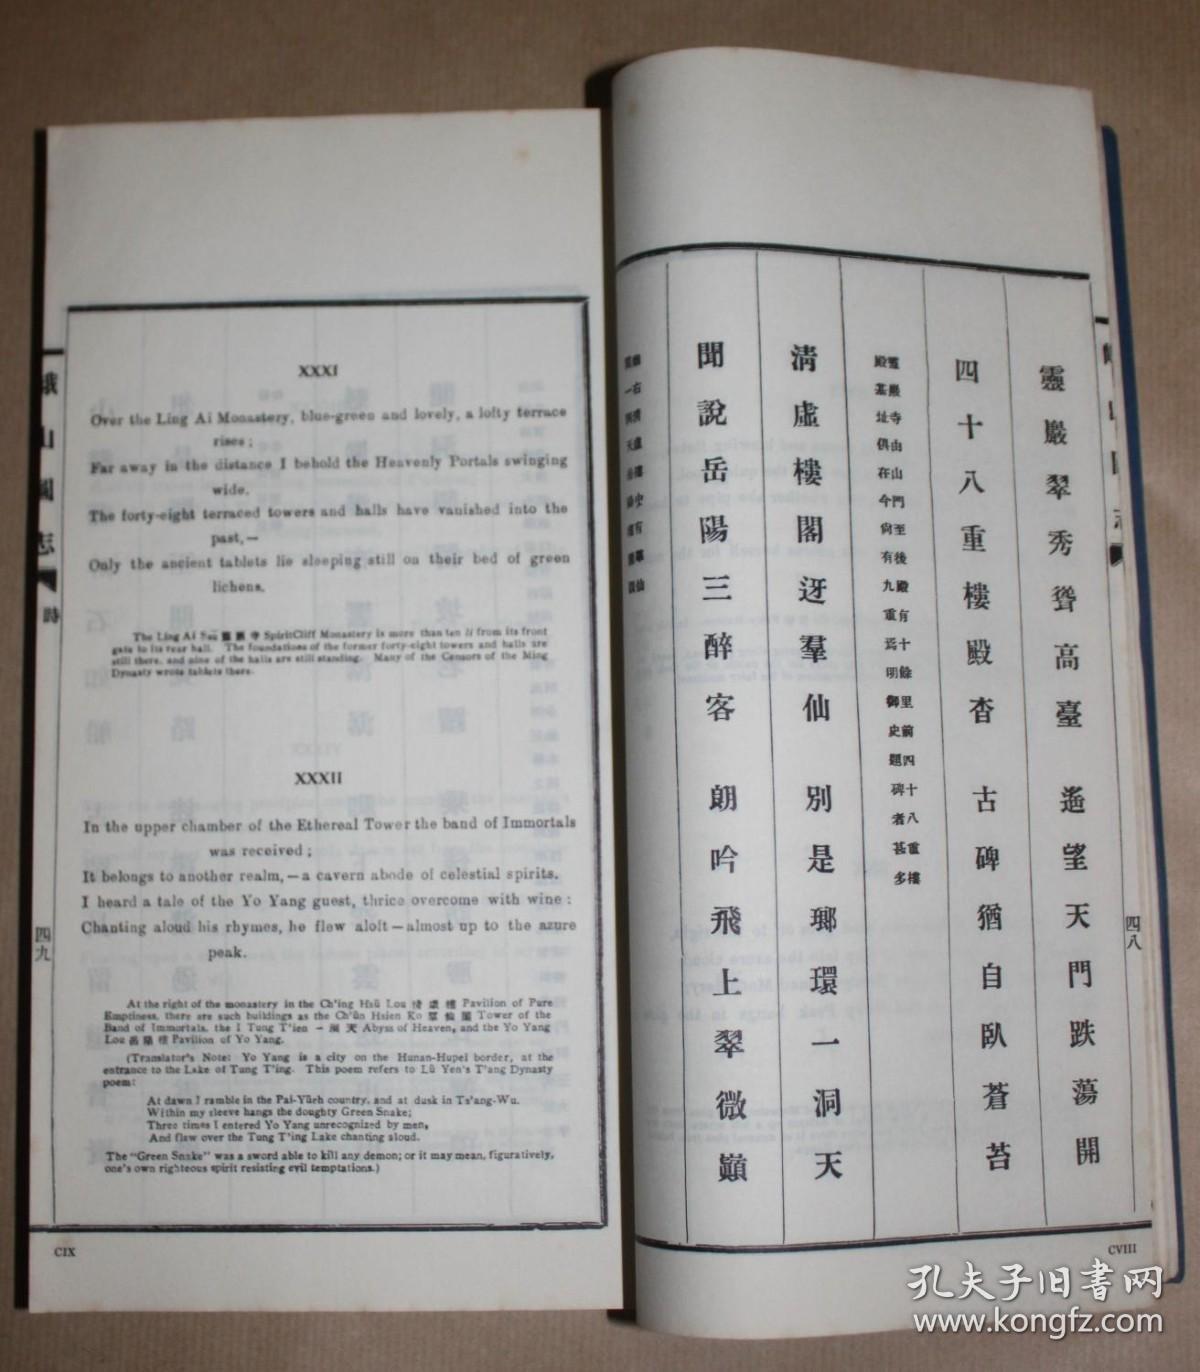 罕见稀缺 原本 《峨山图志》中英对译，插图本线装，1976年出版